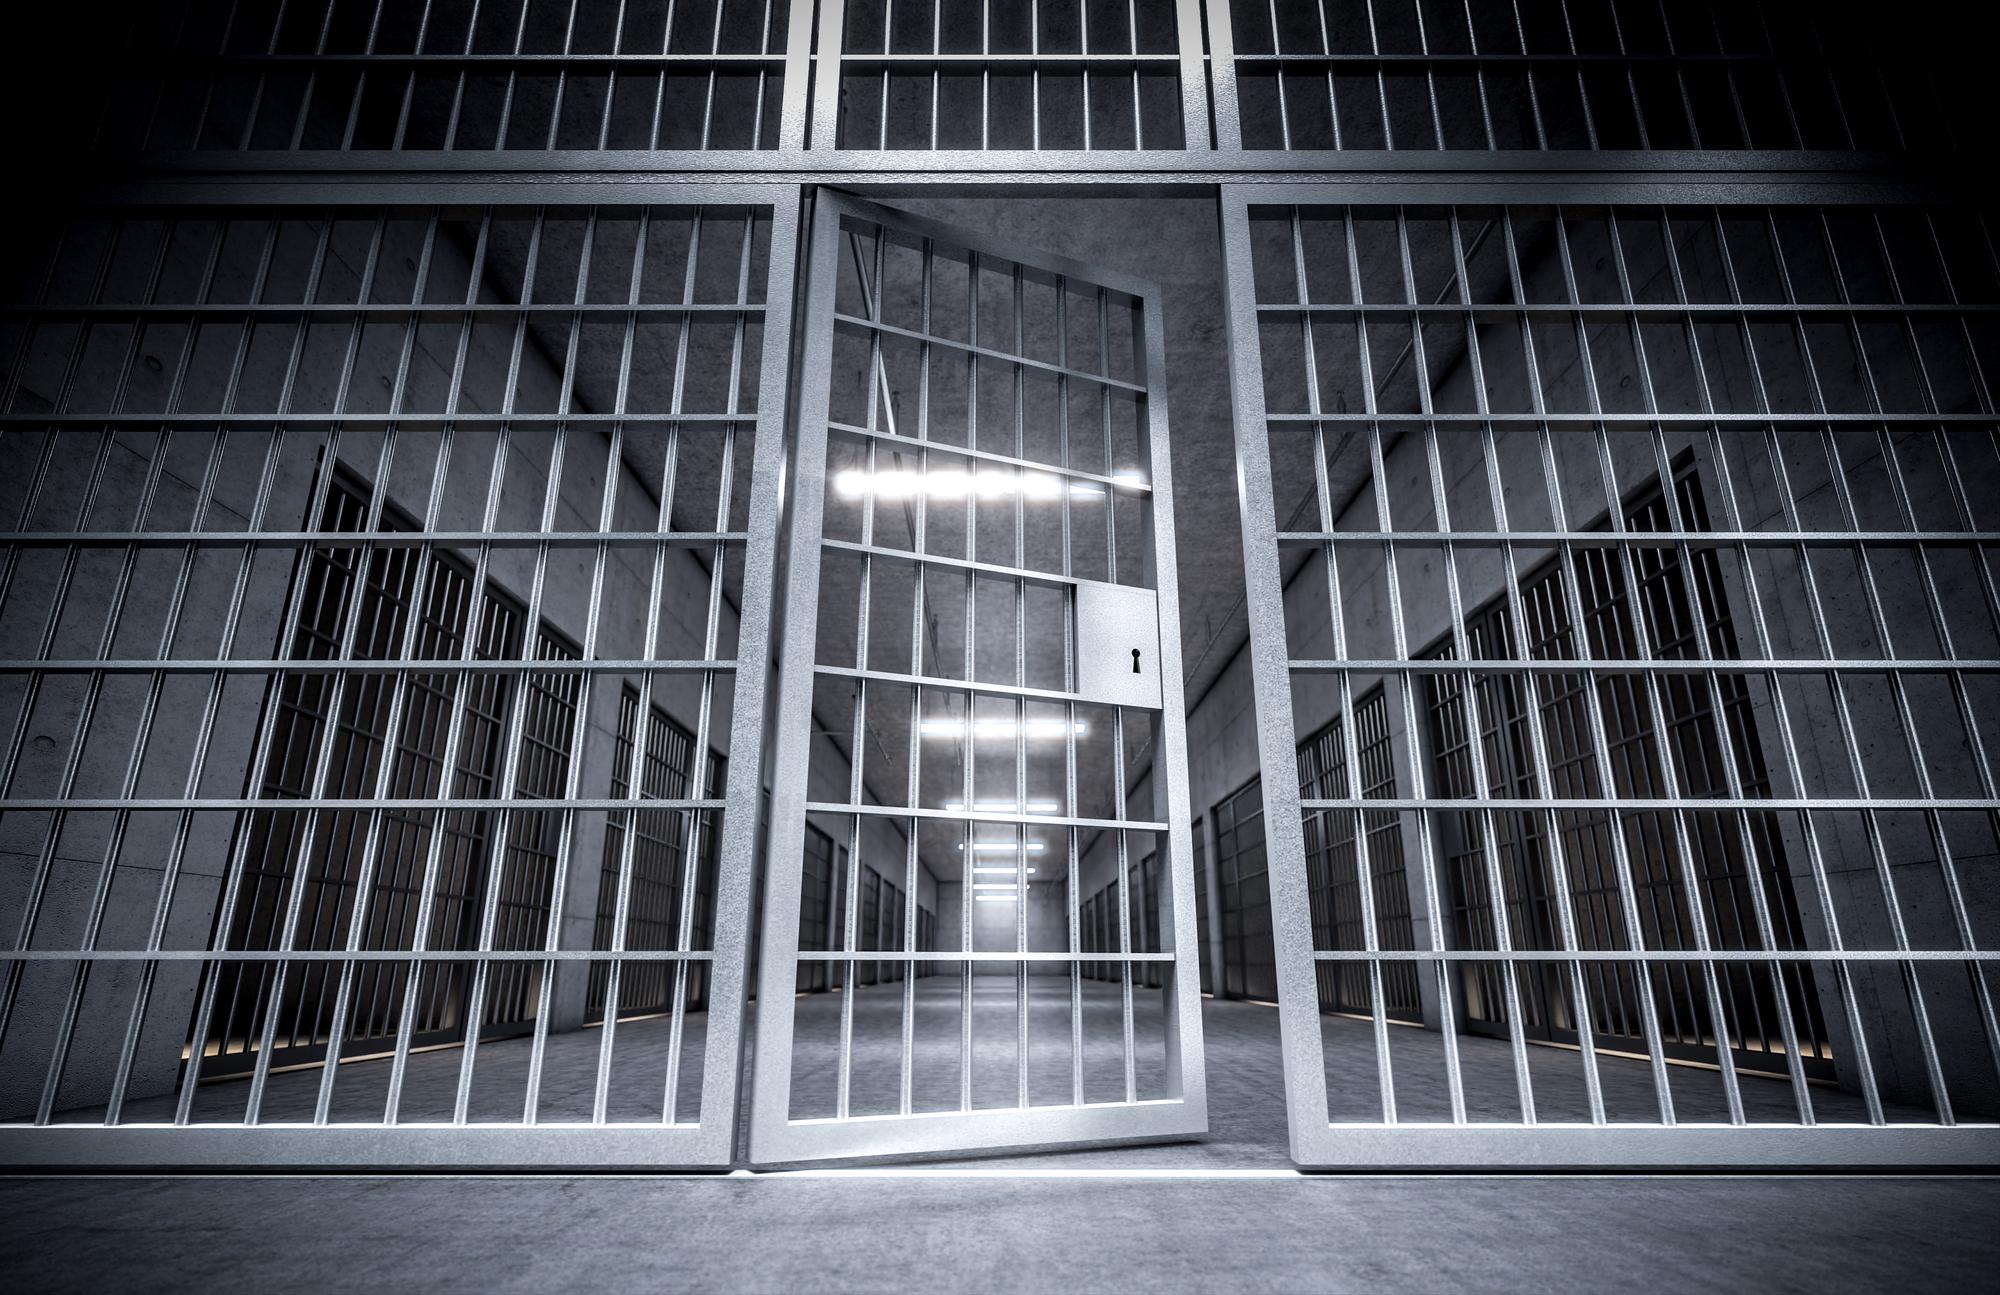 Gittertür in einem Gefängnis